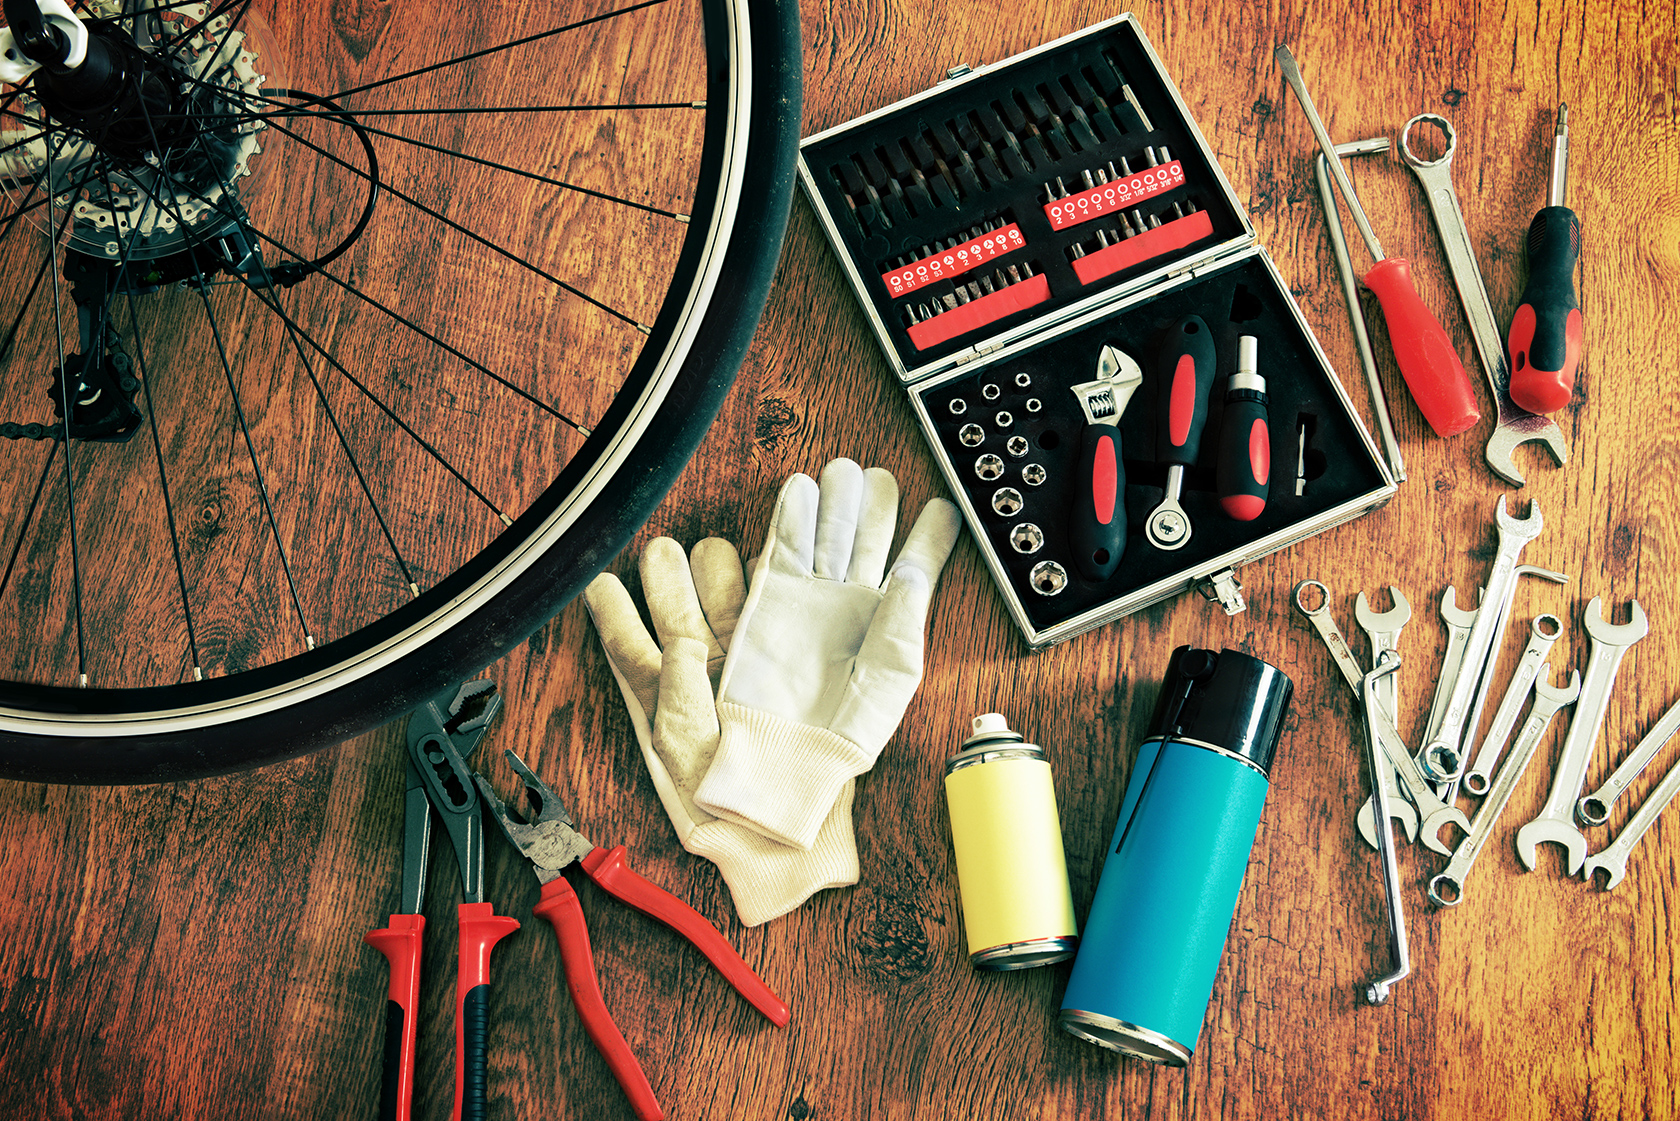 Dévoiler une roue de vélo facilement : comment faire ?